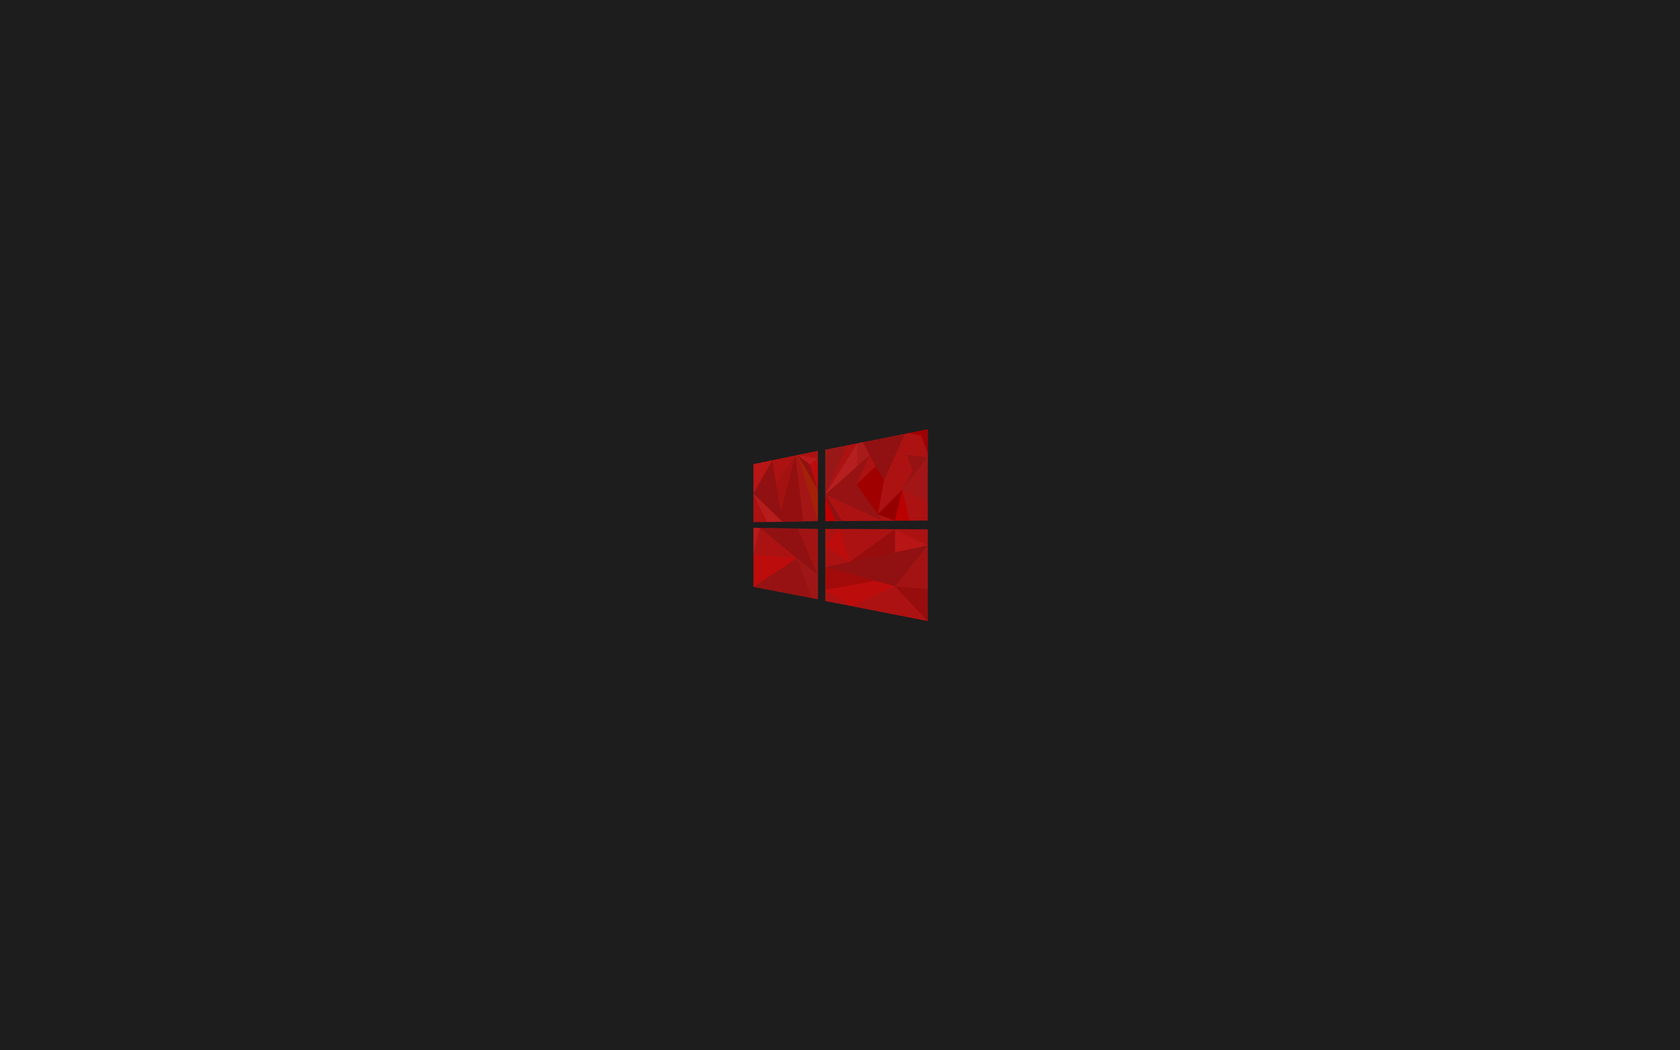 Cập nhật ngay hình nền đơn giản đầy màu sắc cho Windows 10 của bạn với màu đỏ truyền cảm hứng. Hình ảnh đẹp này sẽ giúp bạn tâm trí sảng khoái hơn khi làm việc trên máy tính. Hãy đón xem và cài đặt ngay hôm nay.